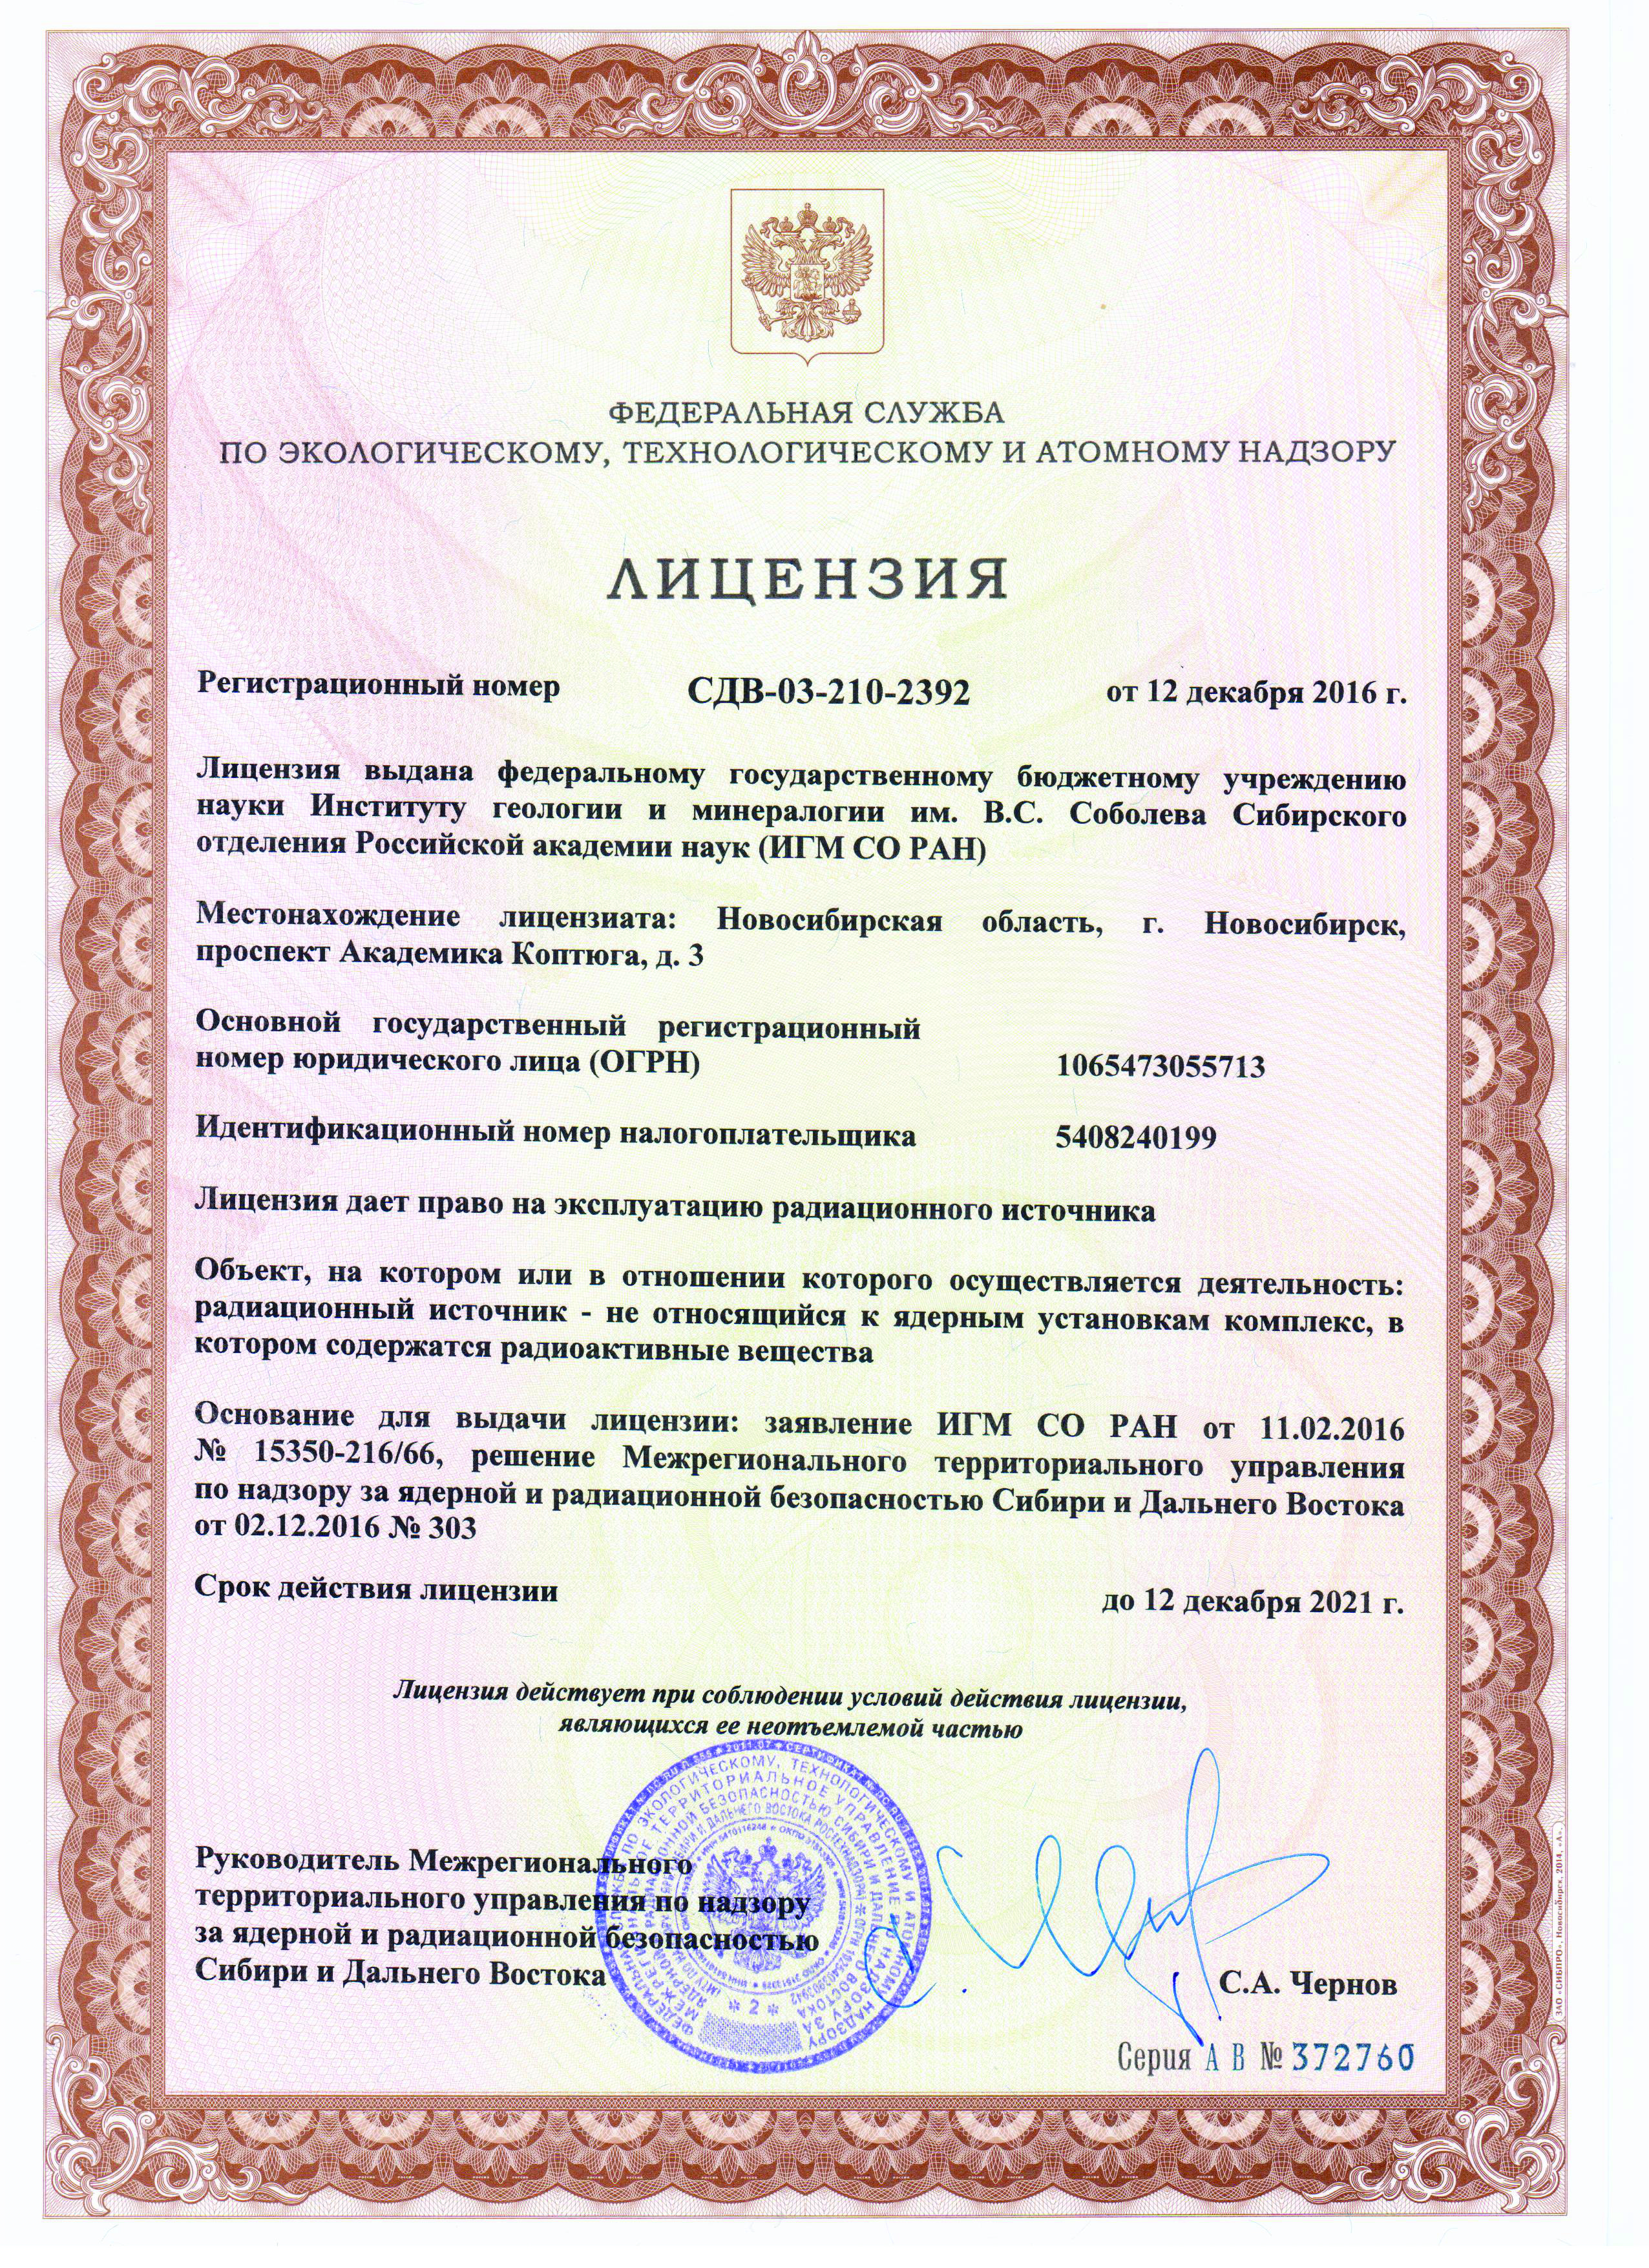 лицензия на ведение работ с радиоактивными веществами